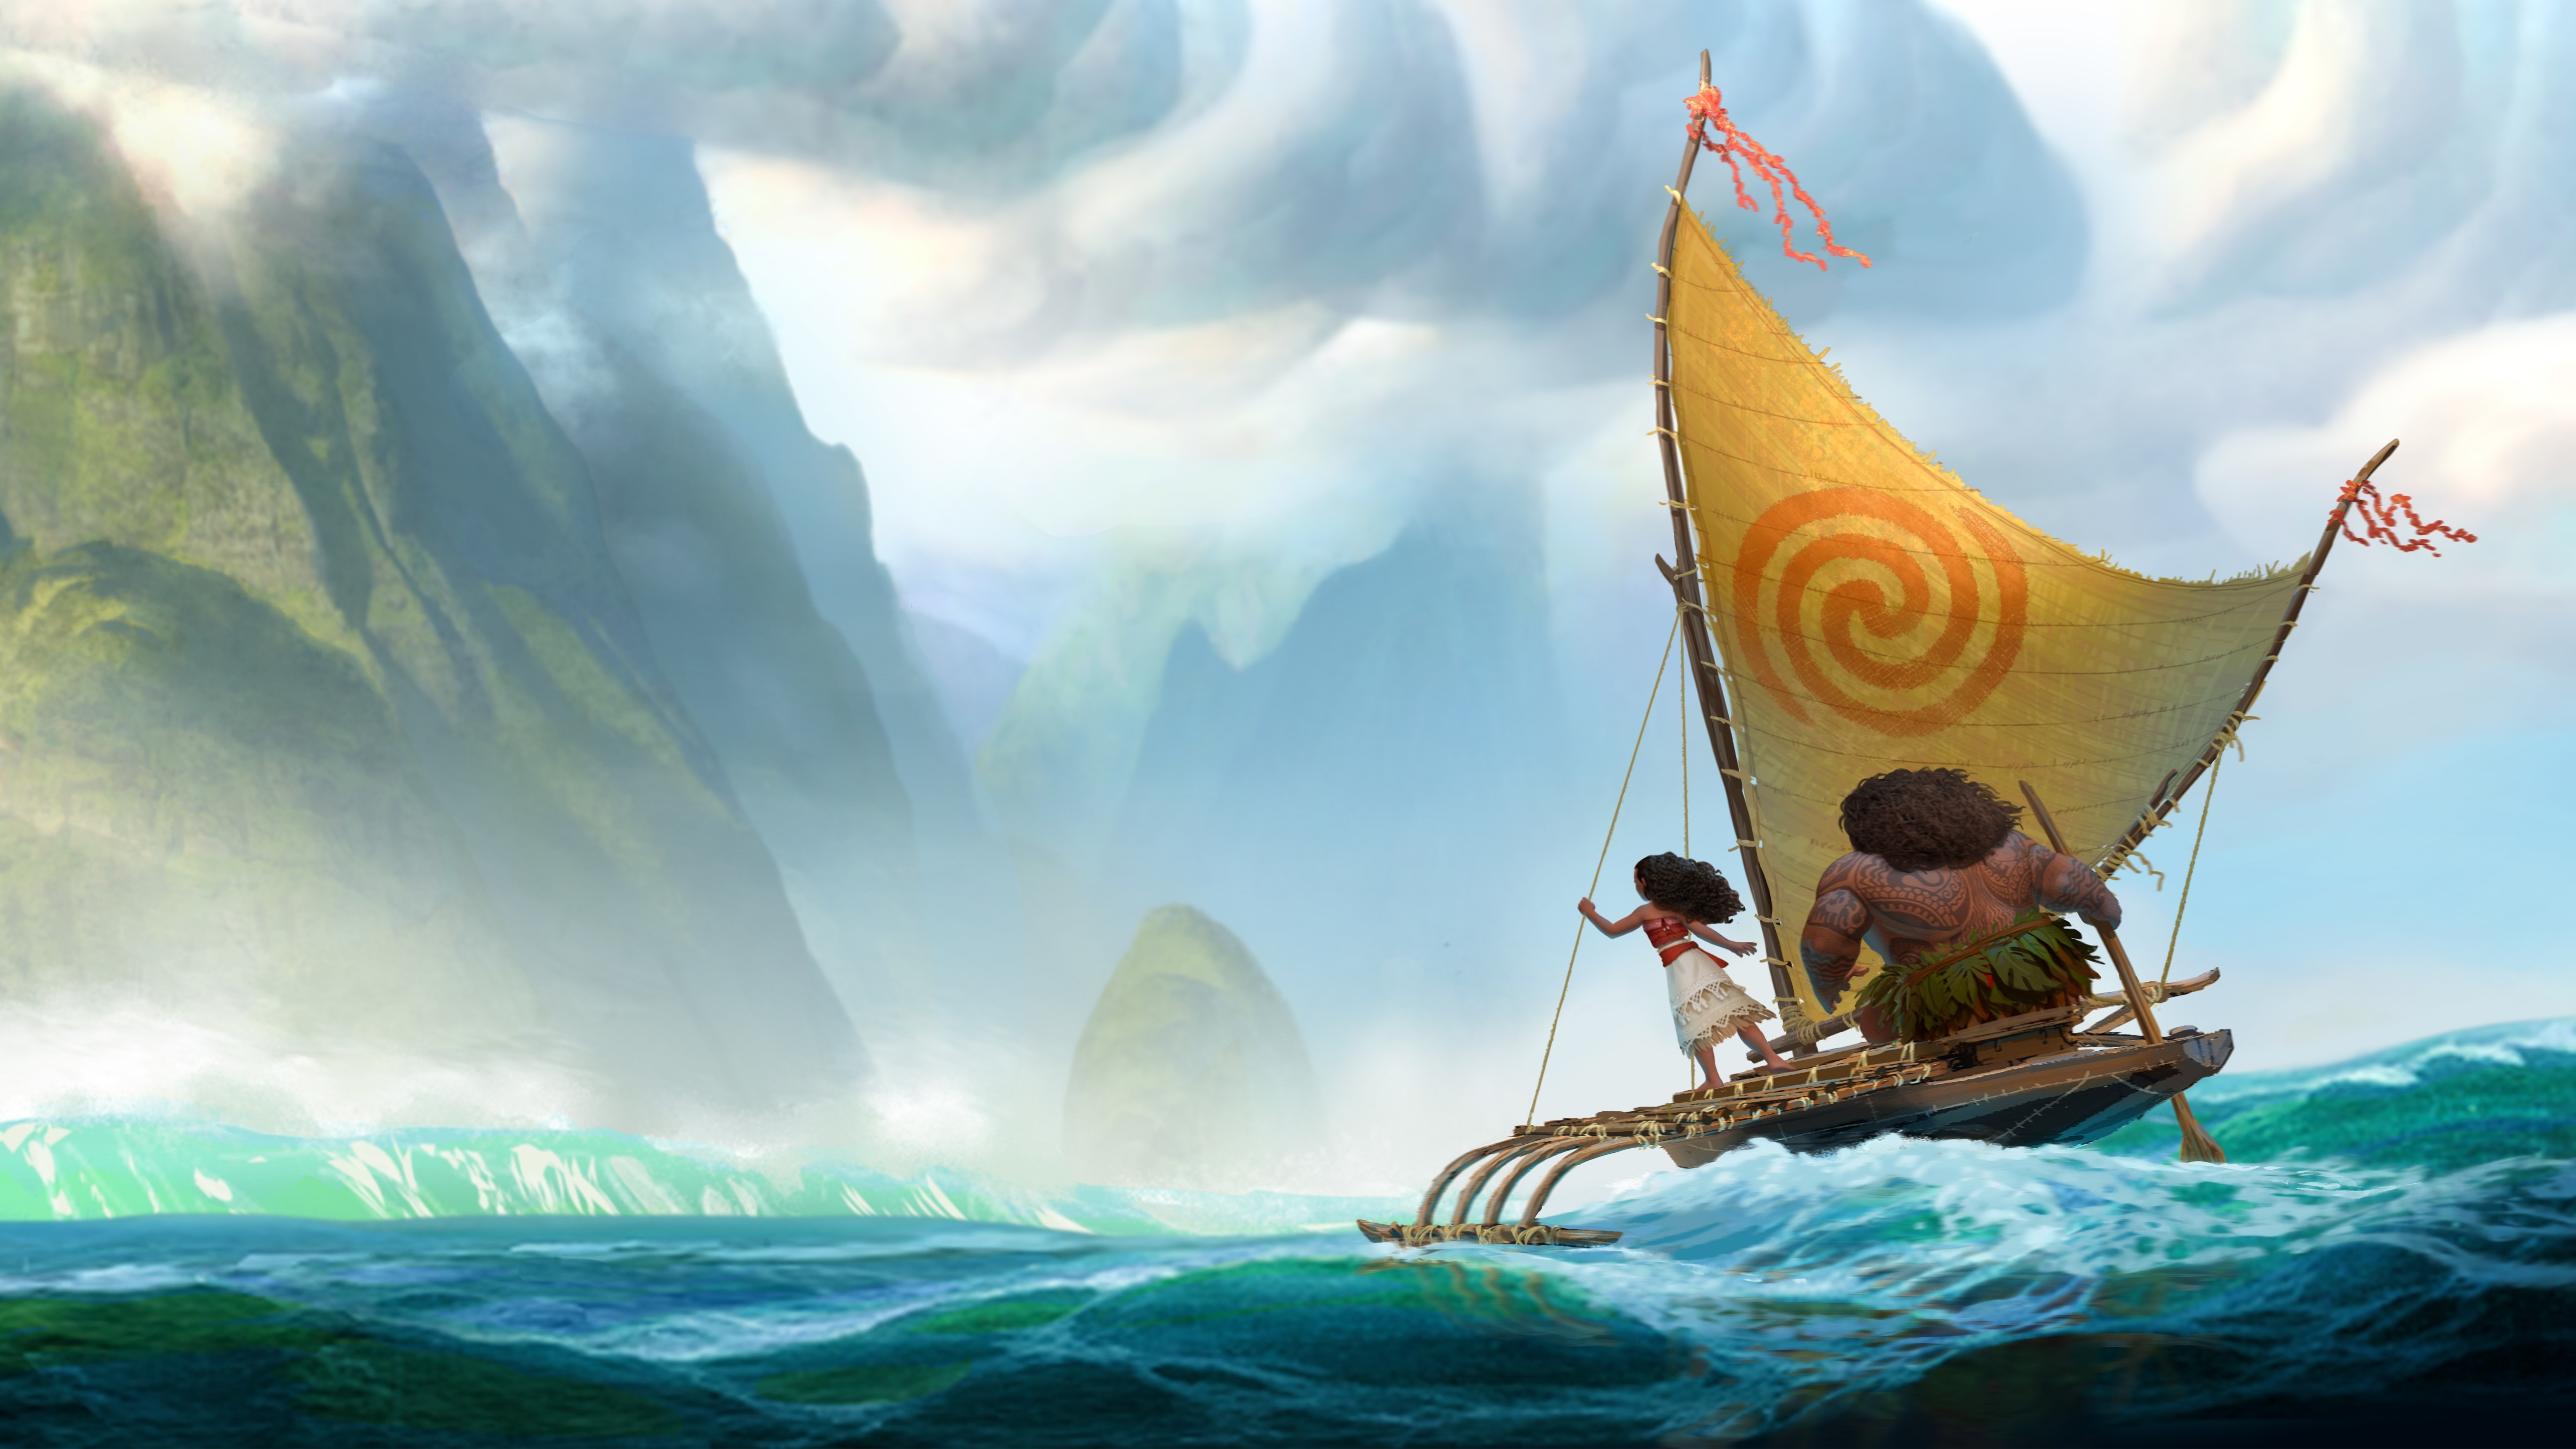 sfondo di film di animazione,barca,navi vichinghe,veicolo,vela,moto d'acqua